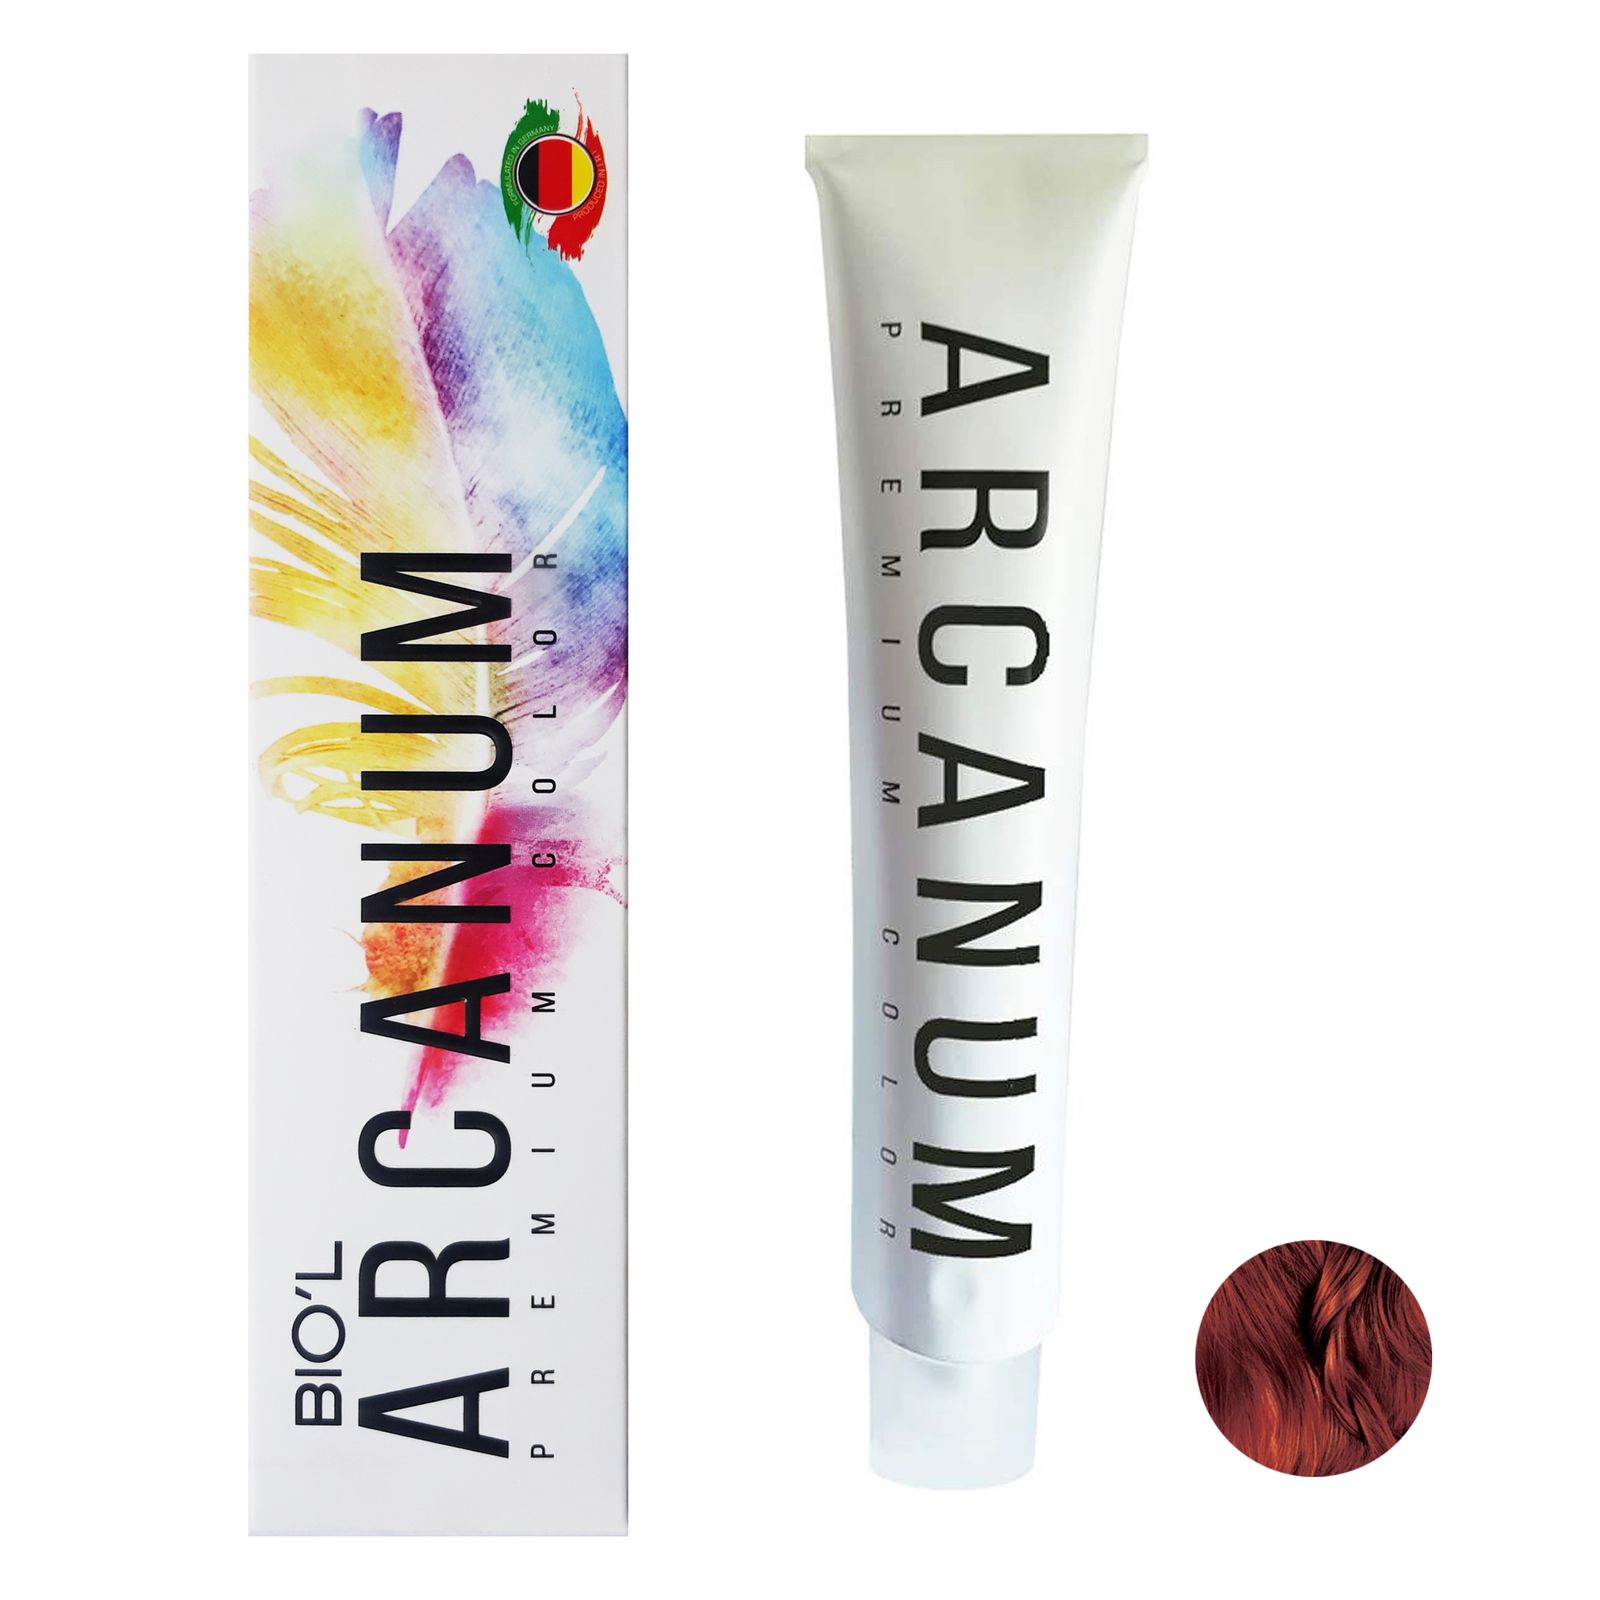  رنگ مو بیول مدل Arcanum شماره 5.85 حجم 120 میلی لیتر رنگ قهوه ای گوشتی روشن -  - 1